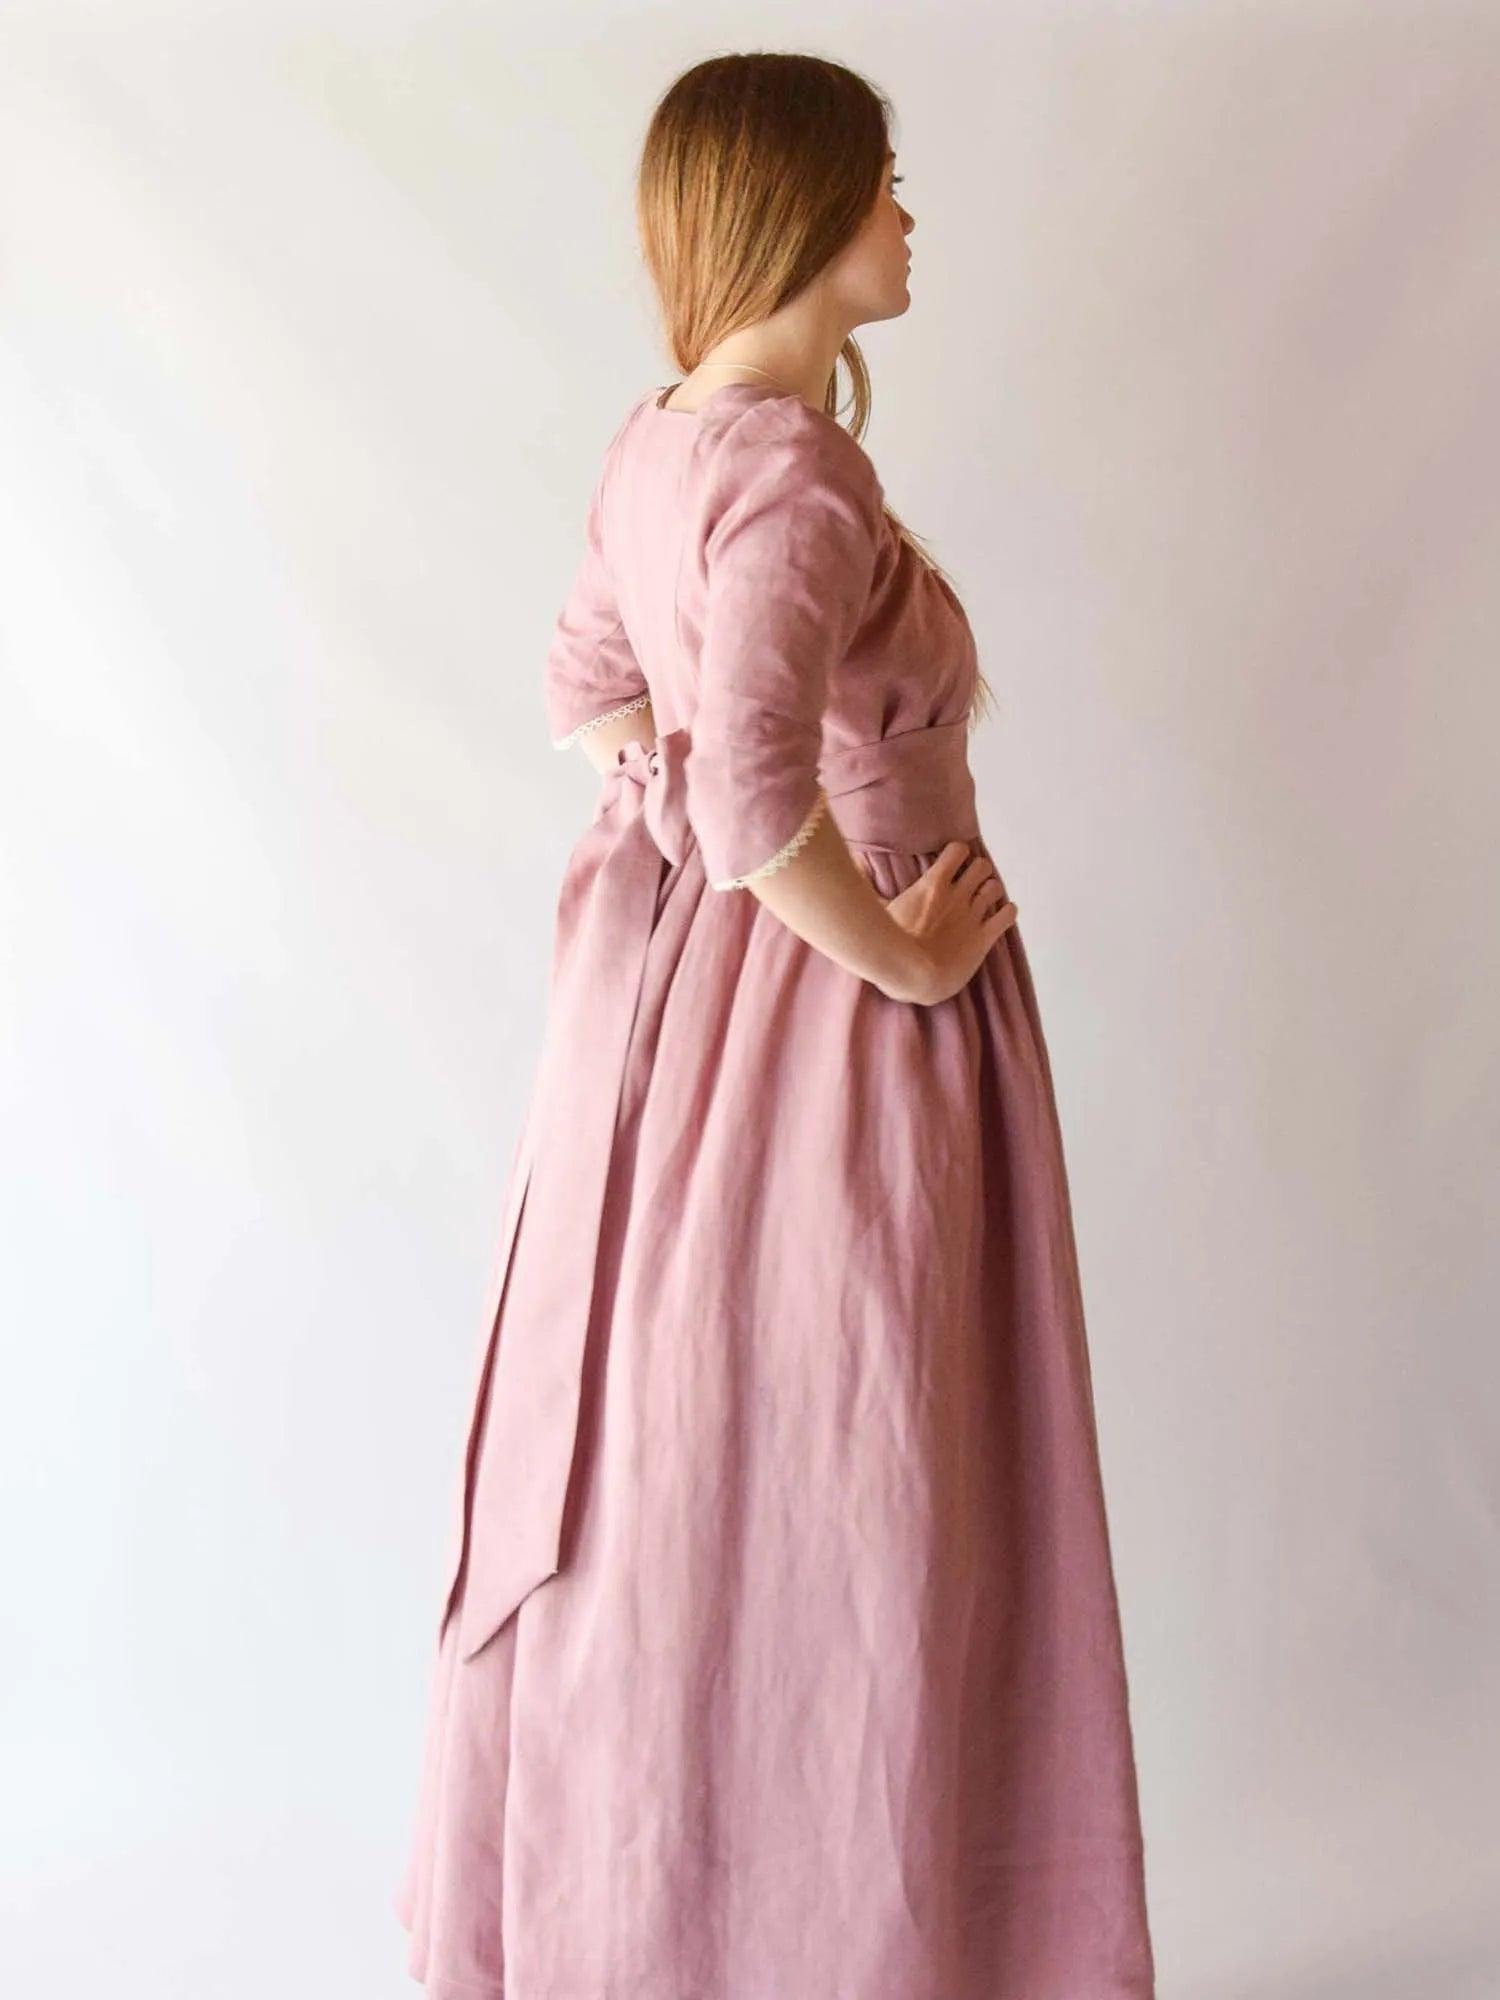 Regency Dress in Old Pink Linen - Atelier Serraspina